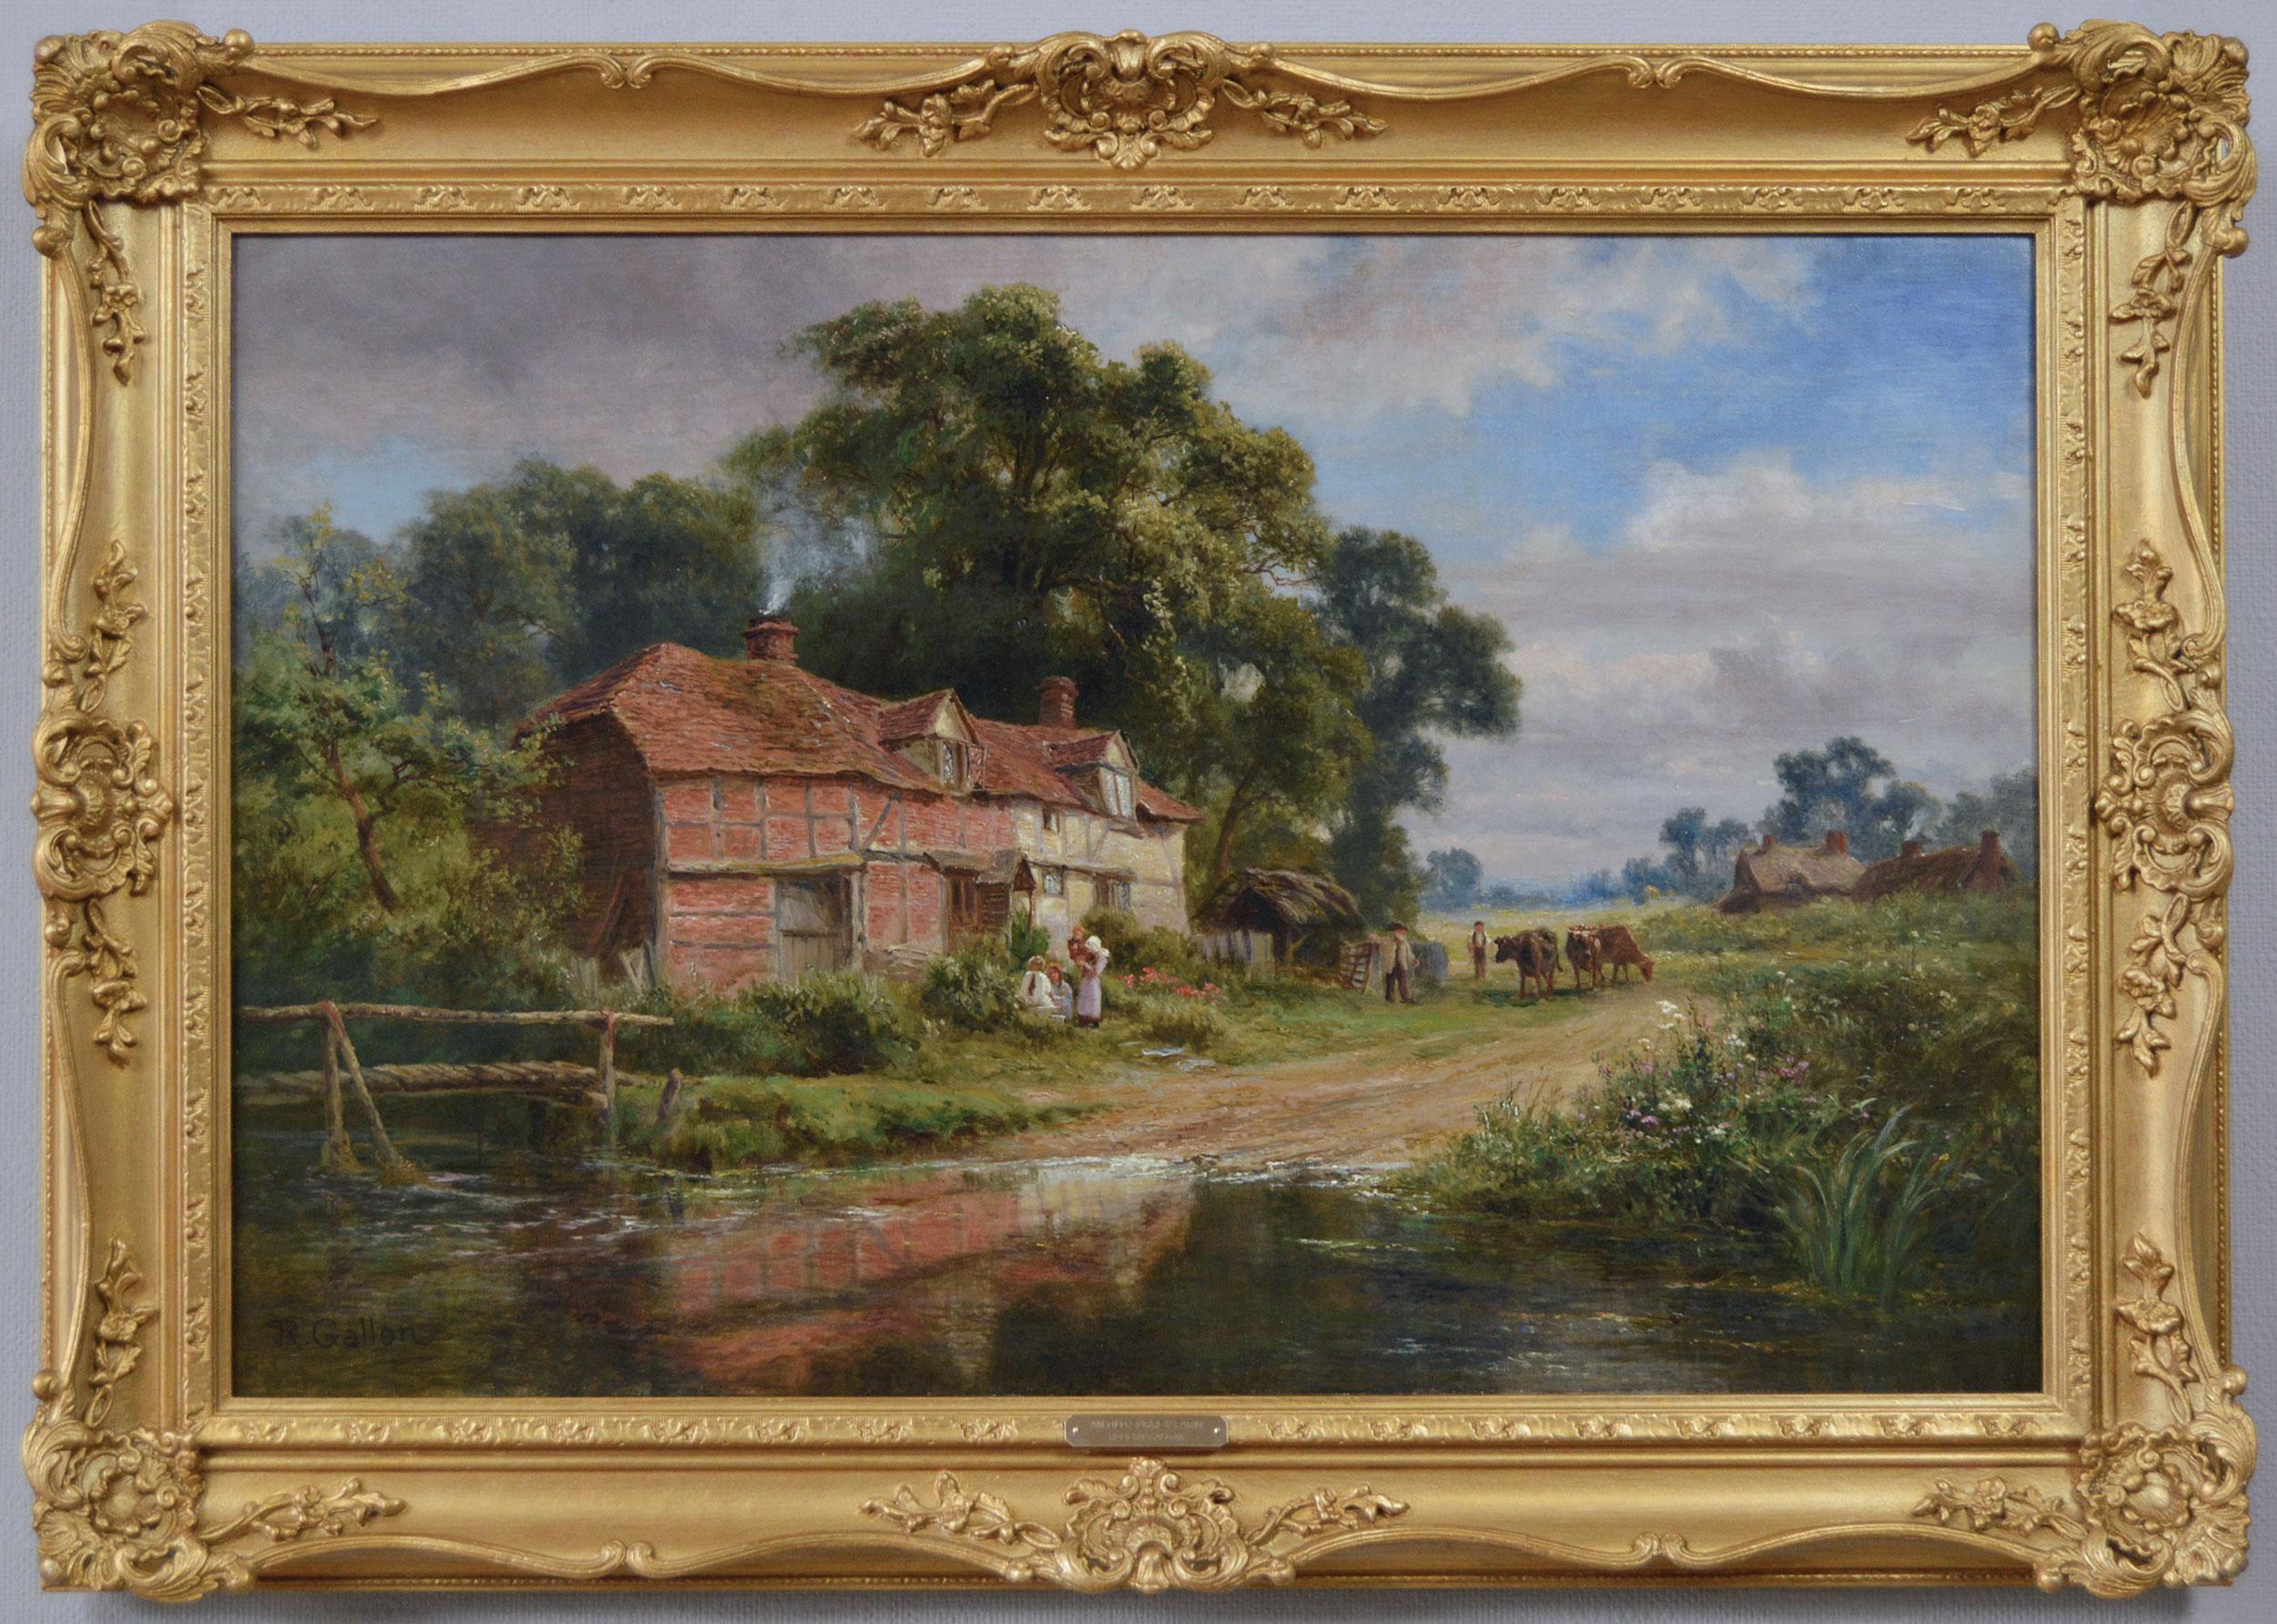 Robert Gallon
Britannique, (1845-1925)
Une vieille ferme du Surrey
Huile sur toile, signée et inscrite au verso
Taille de l'image : 17,5 pouces x 27,5 pouces 
Dimensions, y compris le cadre : 23,5 pouces x 33,5 pouces

Peinture de paysage